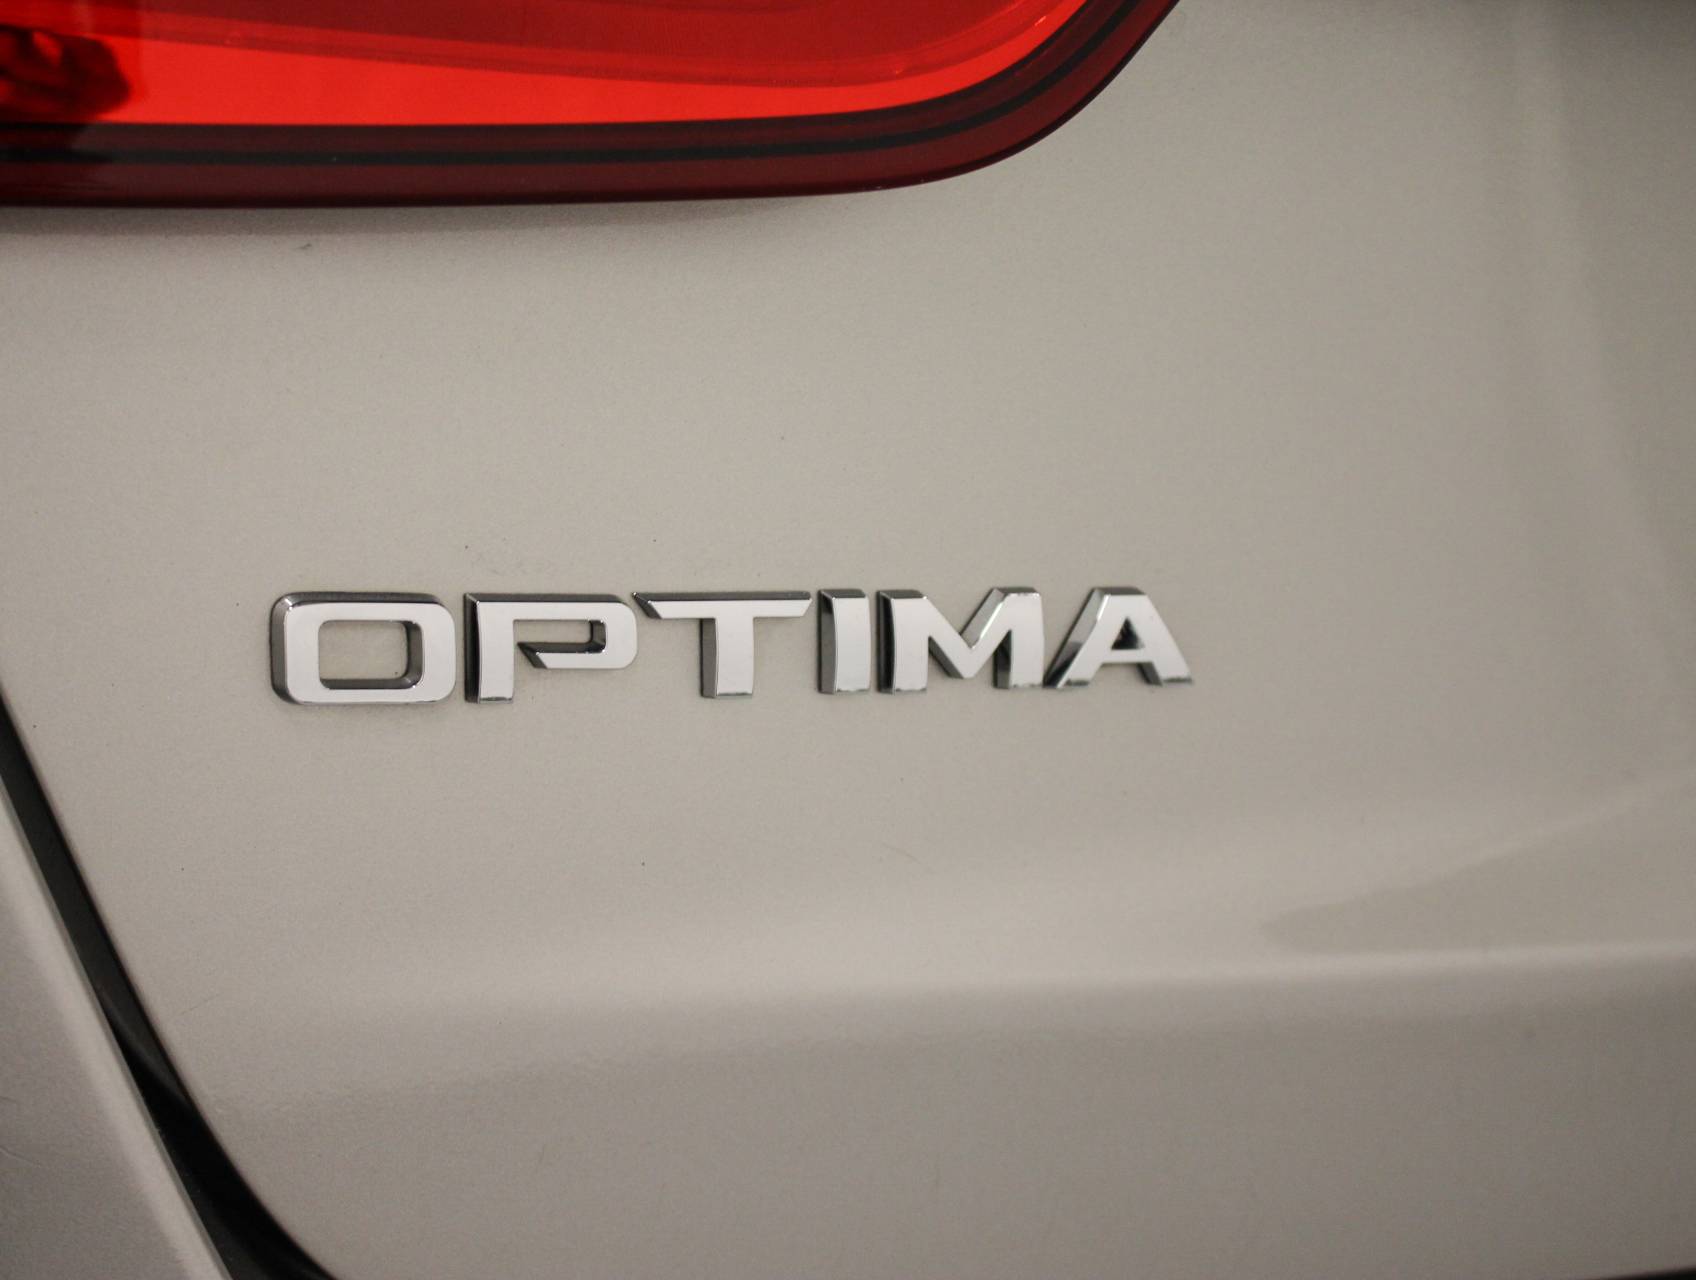 Florida Fine Cars - Used KIA OPTIMA 2014 MARGATE EX